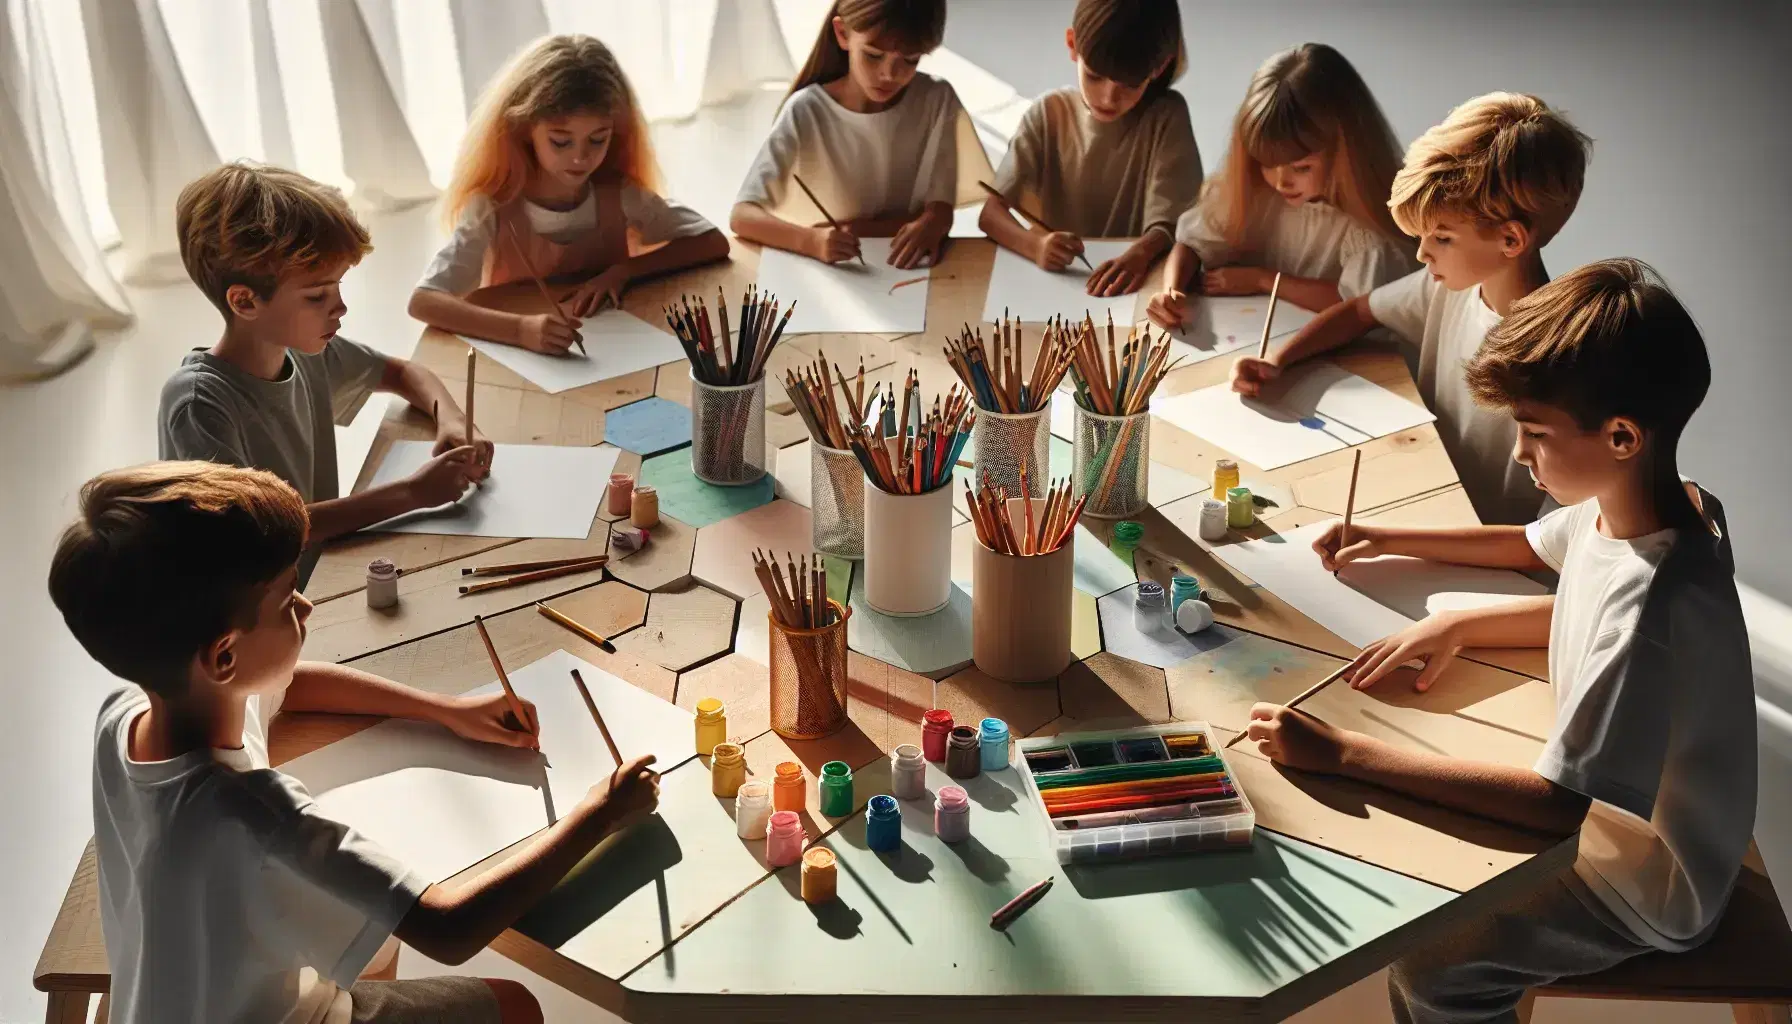 Niños de diversas edades sentados alrededor de una mesa hexagonal de madera, usando materiales de arte como lápices de colores y pinceles, en un ambiente iluminado naturalmente.